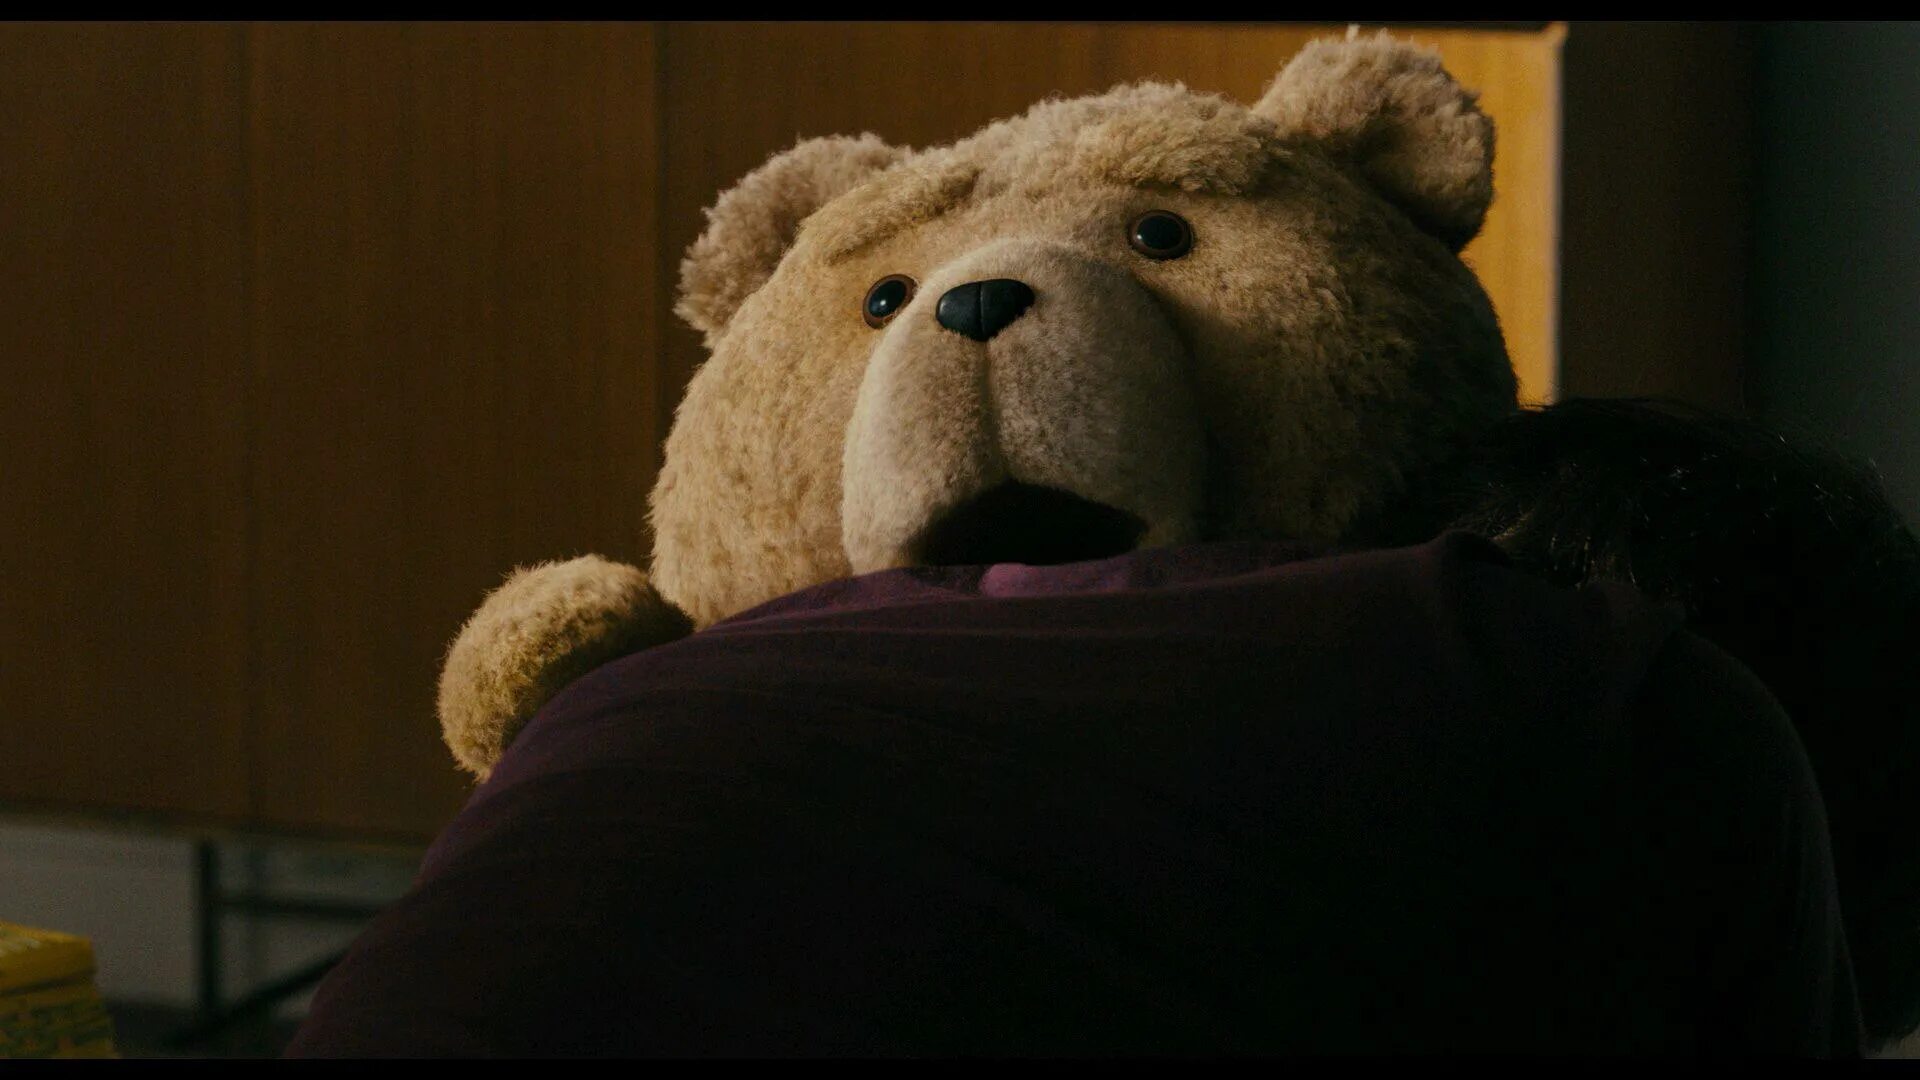 Третий лишний тэд. Тед 2012. Третий лишний / Ted (2012). Медведь Тед. Мишка Тед третий лишний.